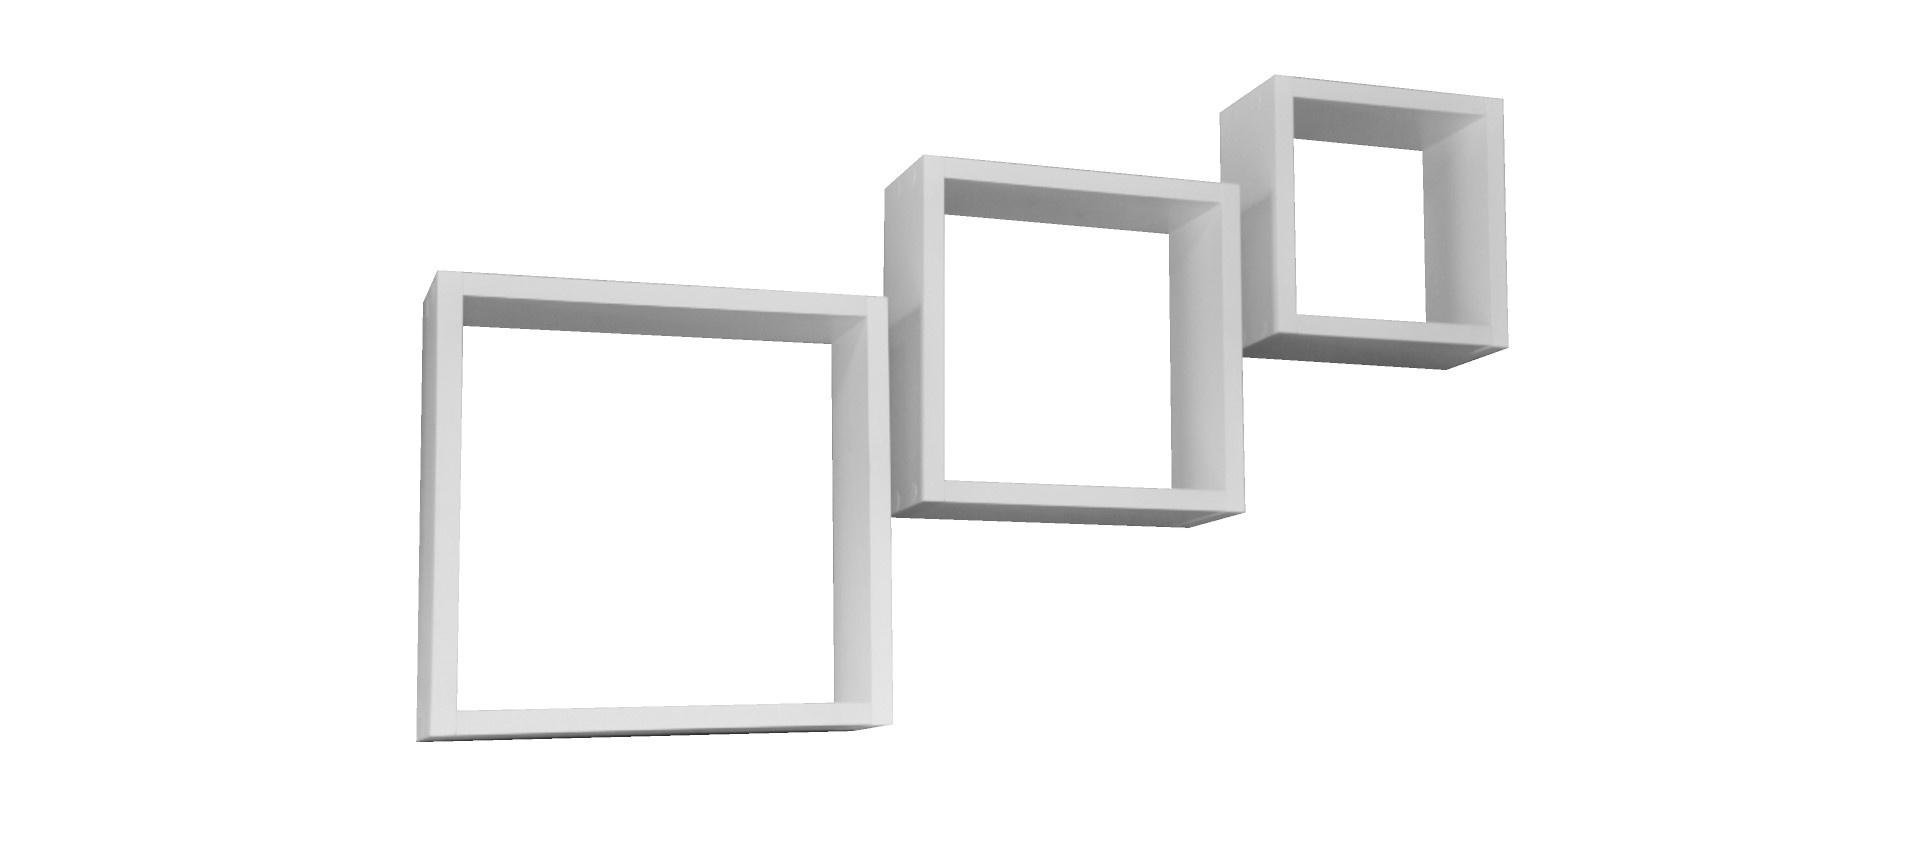 Kit 3 Nichos Decorativos Quadrados em Três Tamanhos P M G:branco